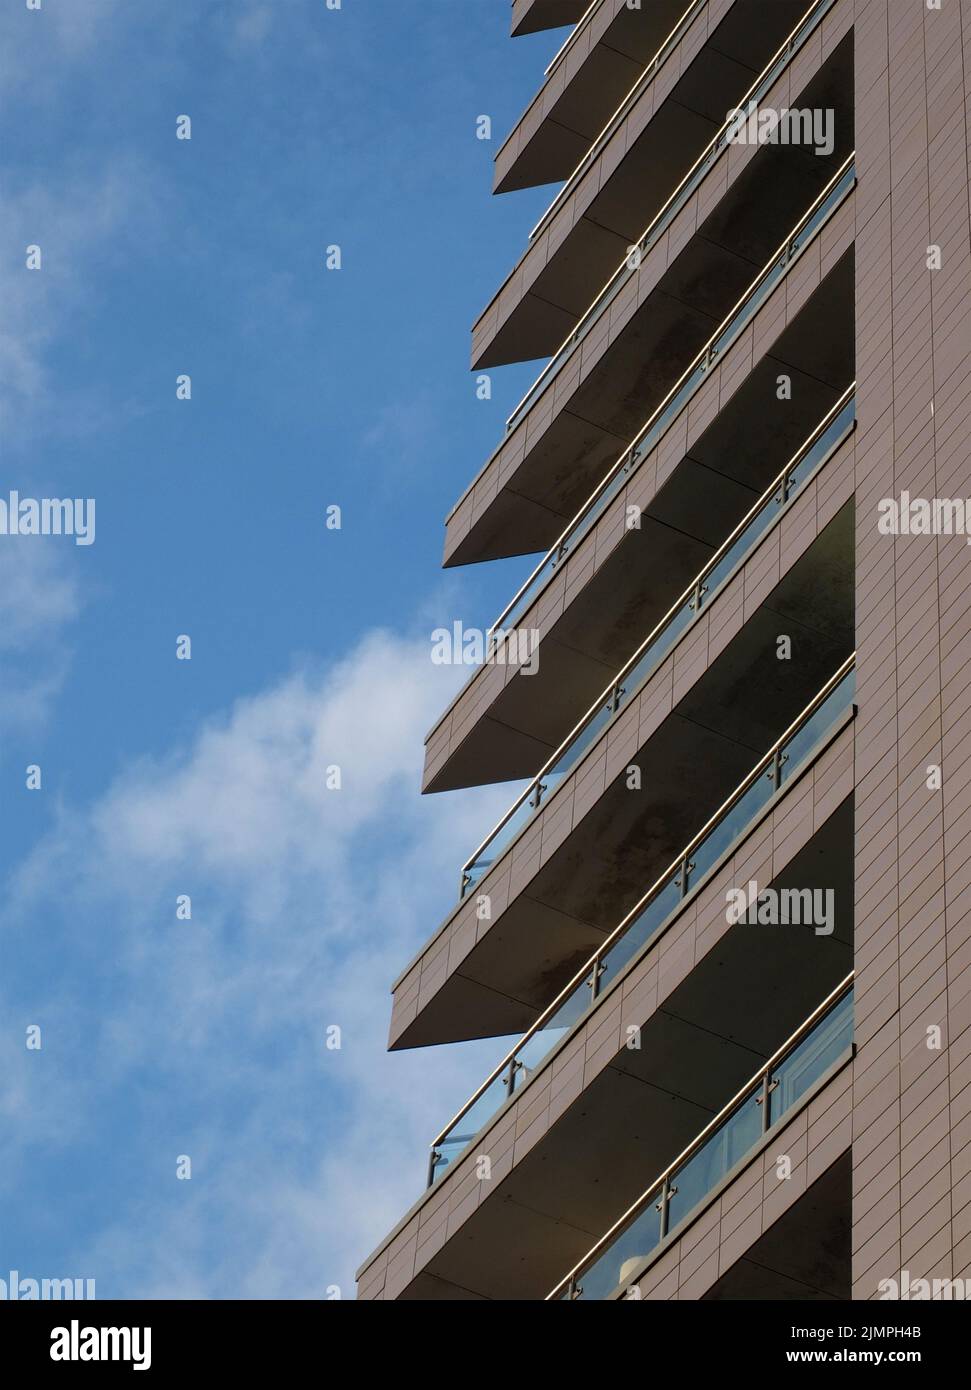 Die angewinkelten Balkone mit Glasgeländern befinden sich in einem modernen Apartmentgebäude, das von einem blau bewölkten Himmel umgeben ist Stockfoto